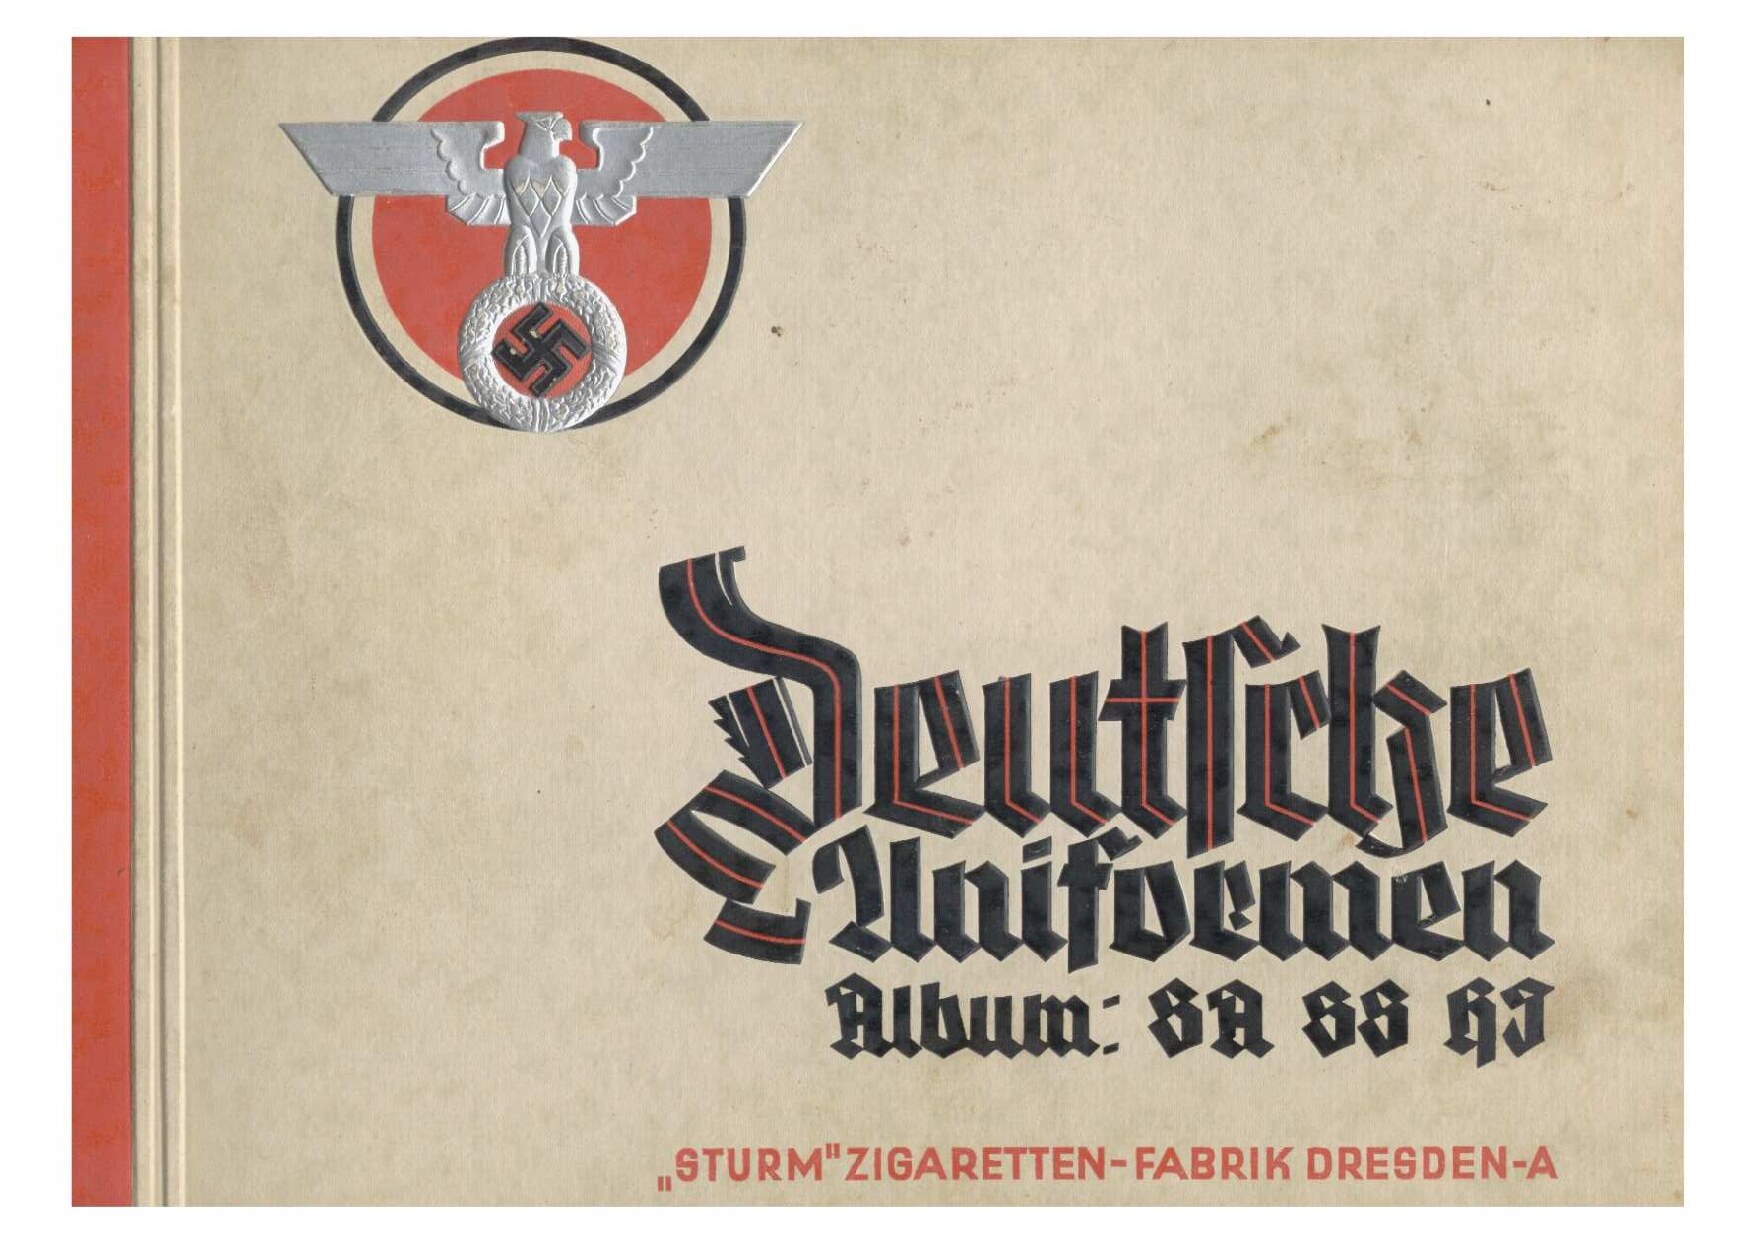 Deutsche Uniformen-Album: SA SS HJ